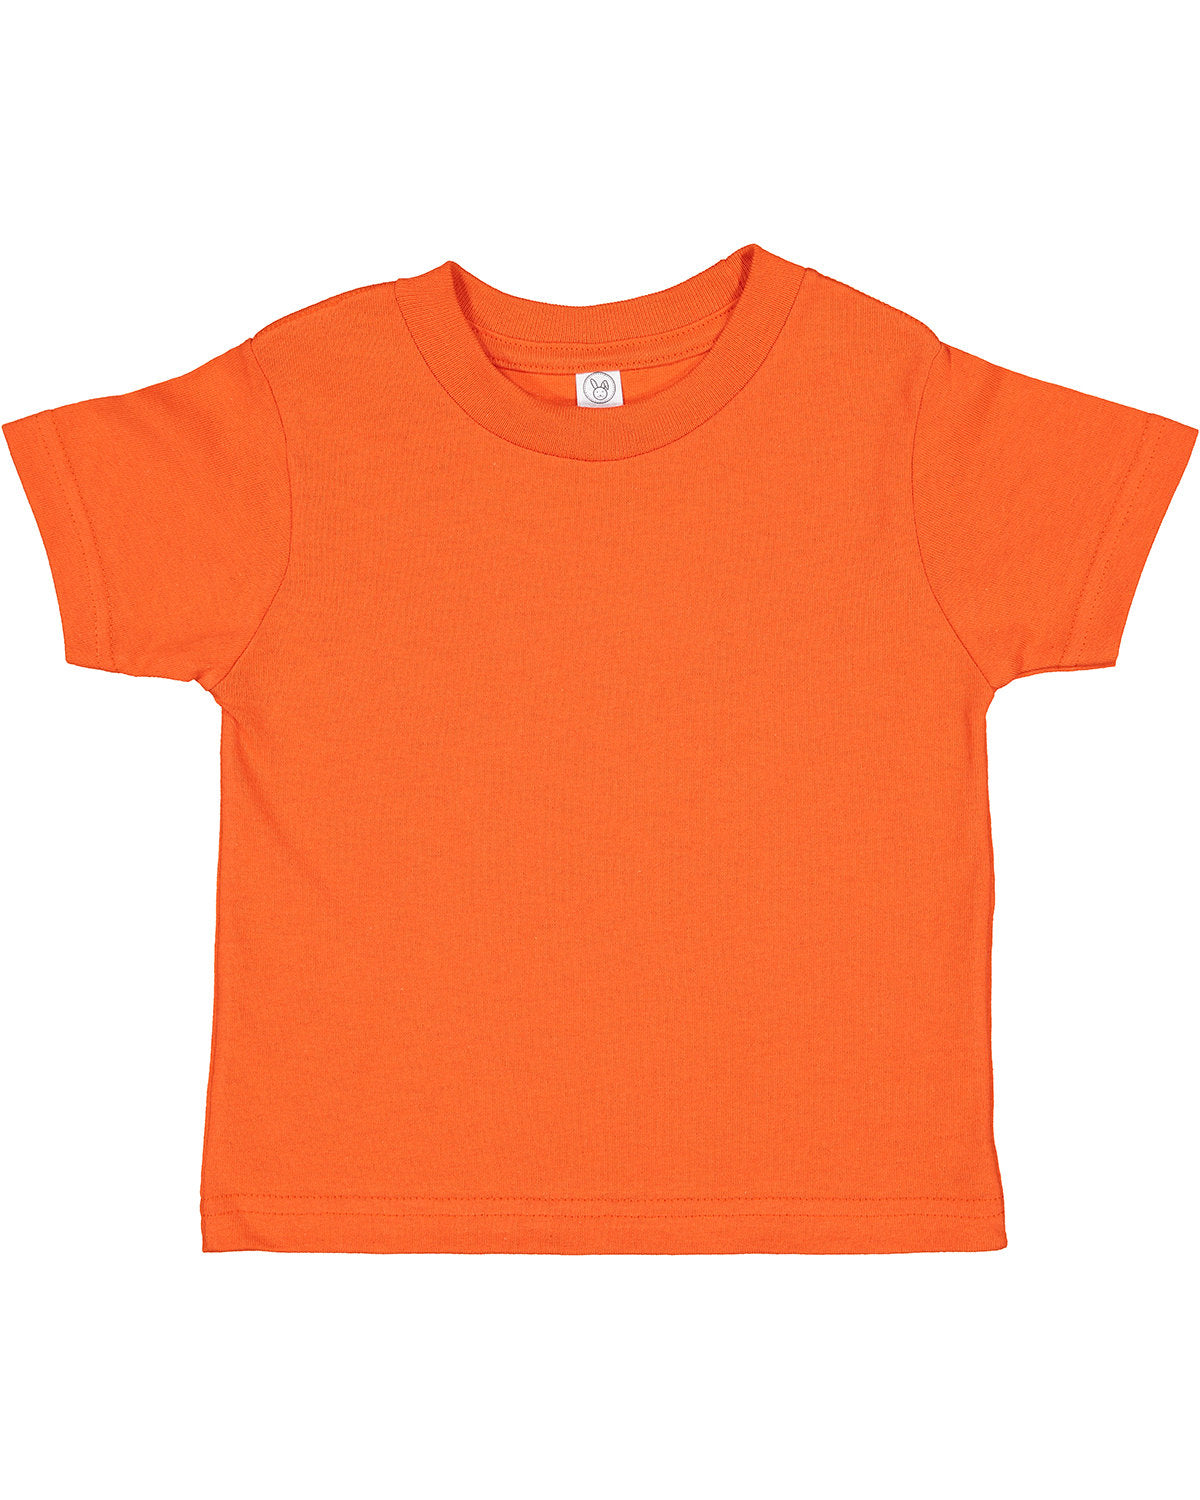 Rabbit Skins Toddler Cotton Jersey T-Shirt 2T / Orange